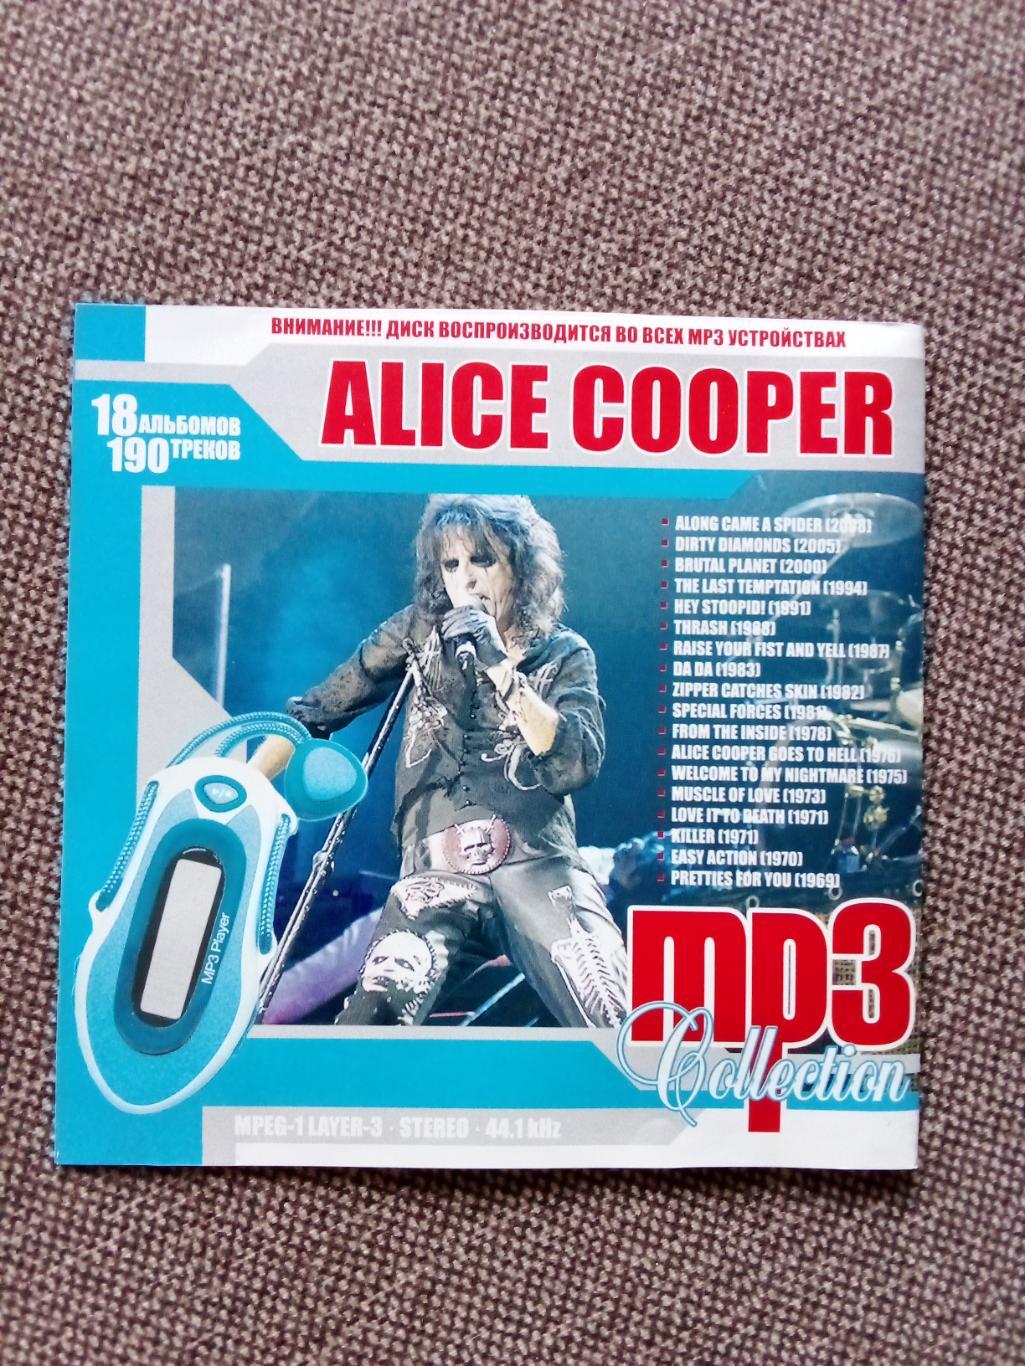 CD MP - 3 диск :Alice Cooper 1969 - 2008 гг. 18 альбомов (Рок - музыка) лицензия 3